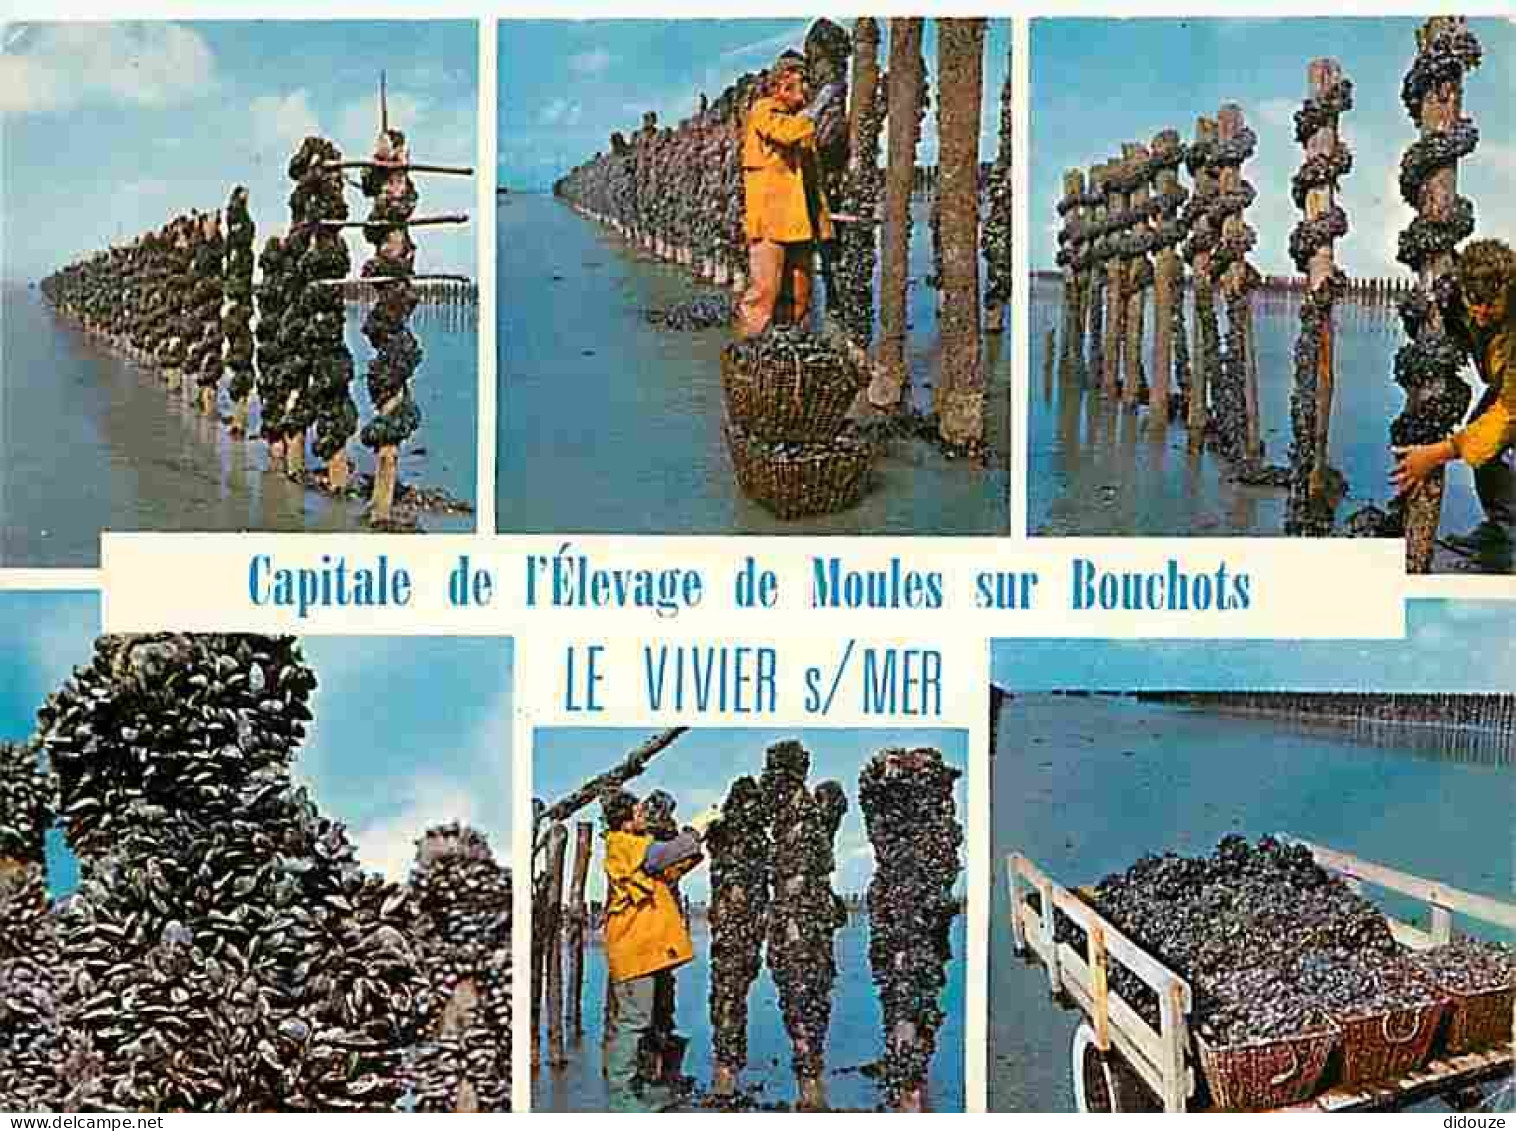 Metiers - Mytiliculture - Culture Des Moules - Mytilicultureur - Le Vivier Sur Mer - Capitale De L'èlevage Des Moules De - Fishing